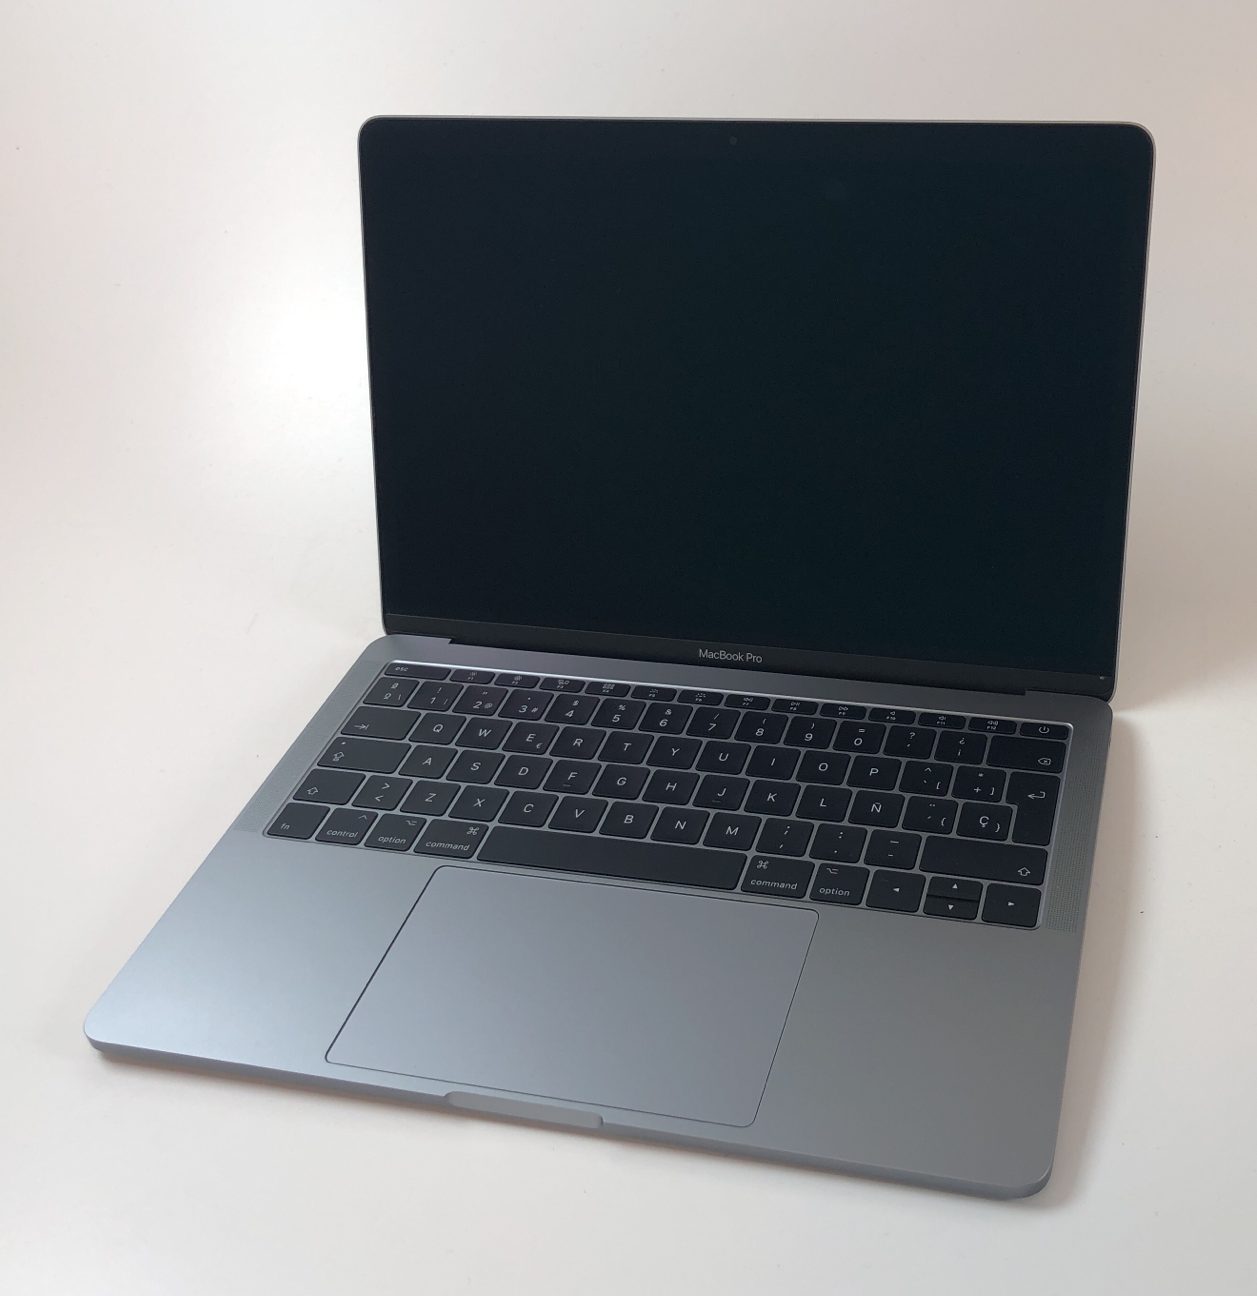 macbook pro mid 2017 13 inch specs